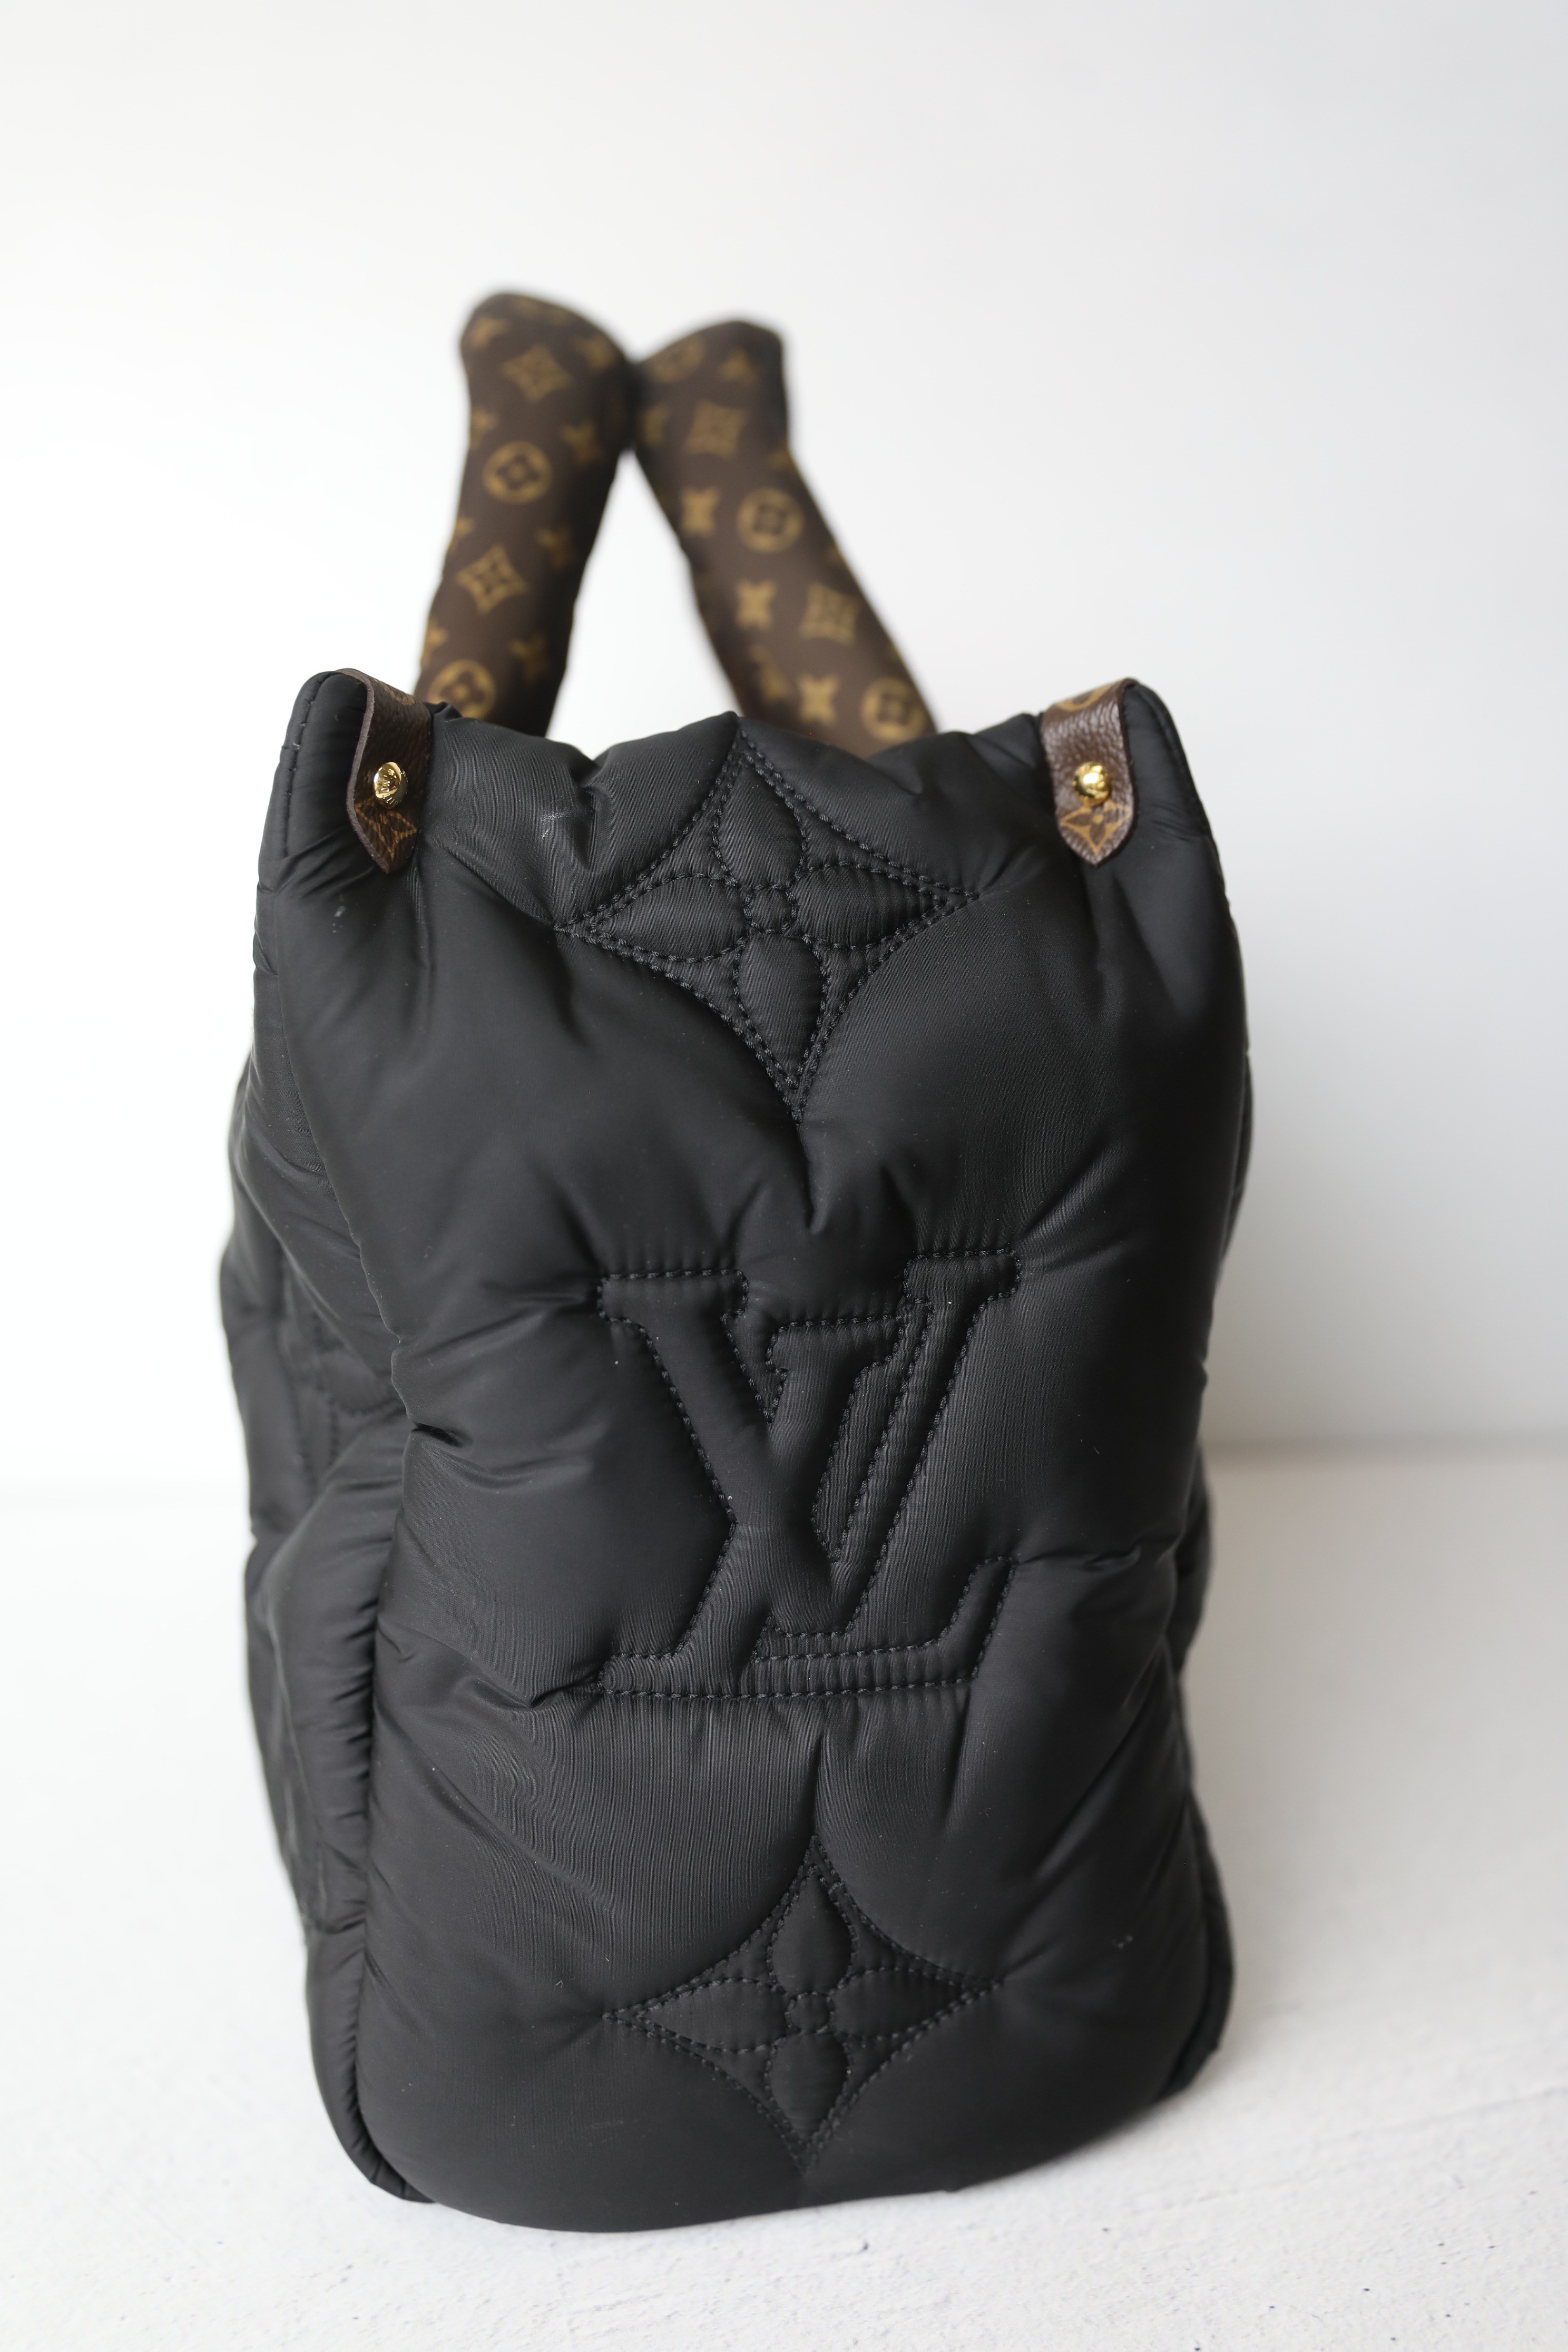 Louis Vuitton Onthego MM Pillow Black Bag Puffer Giant Flower